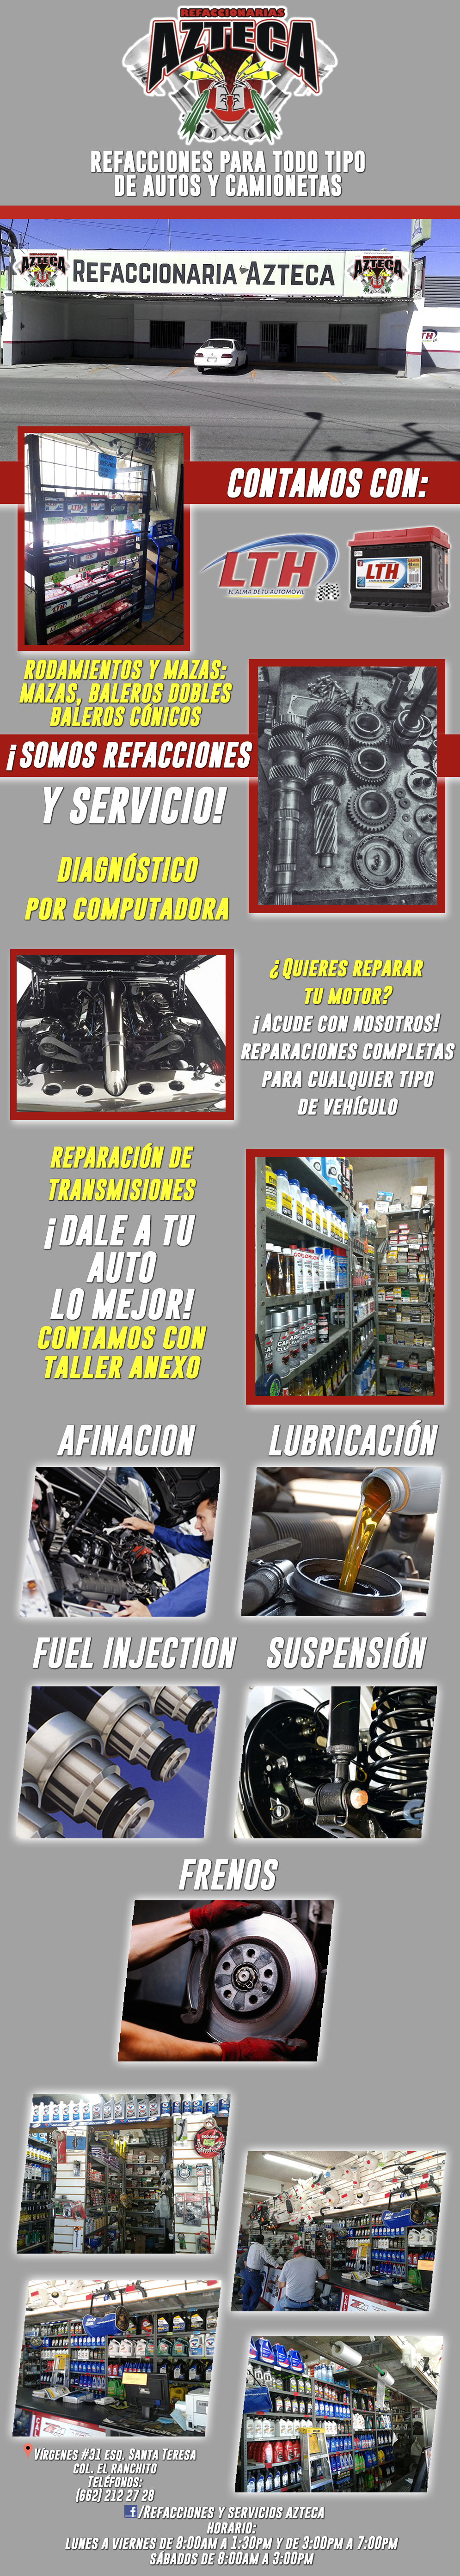 Refaccionaria AZTECA Ranchito-Refacciones para todo tipo de Automóviles y Camiones. Contamos con una gran variedad de Refacciones. CONTAMOS CON TALLER. 
        